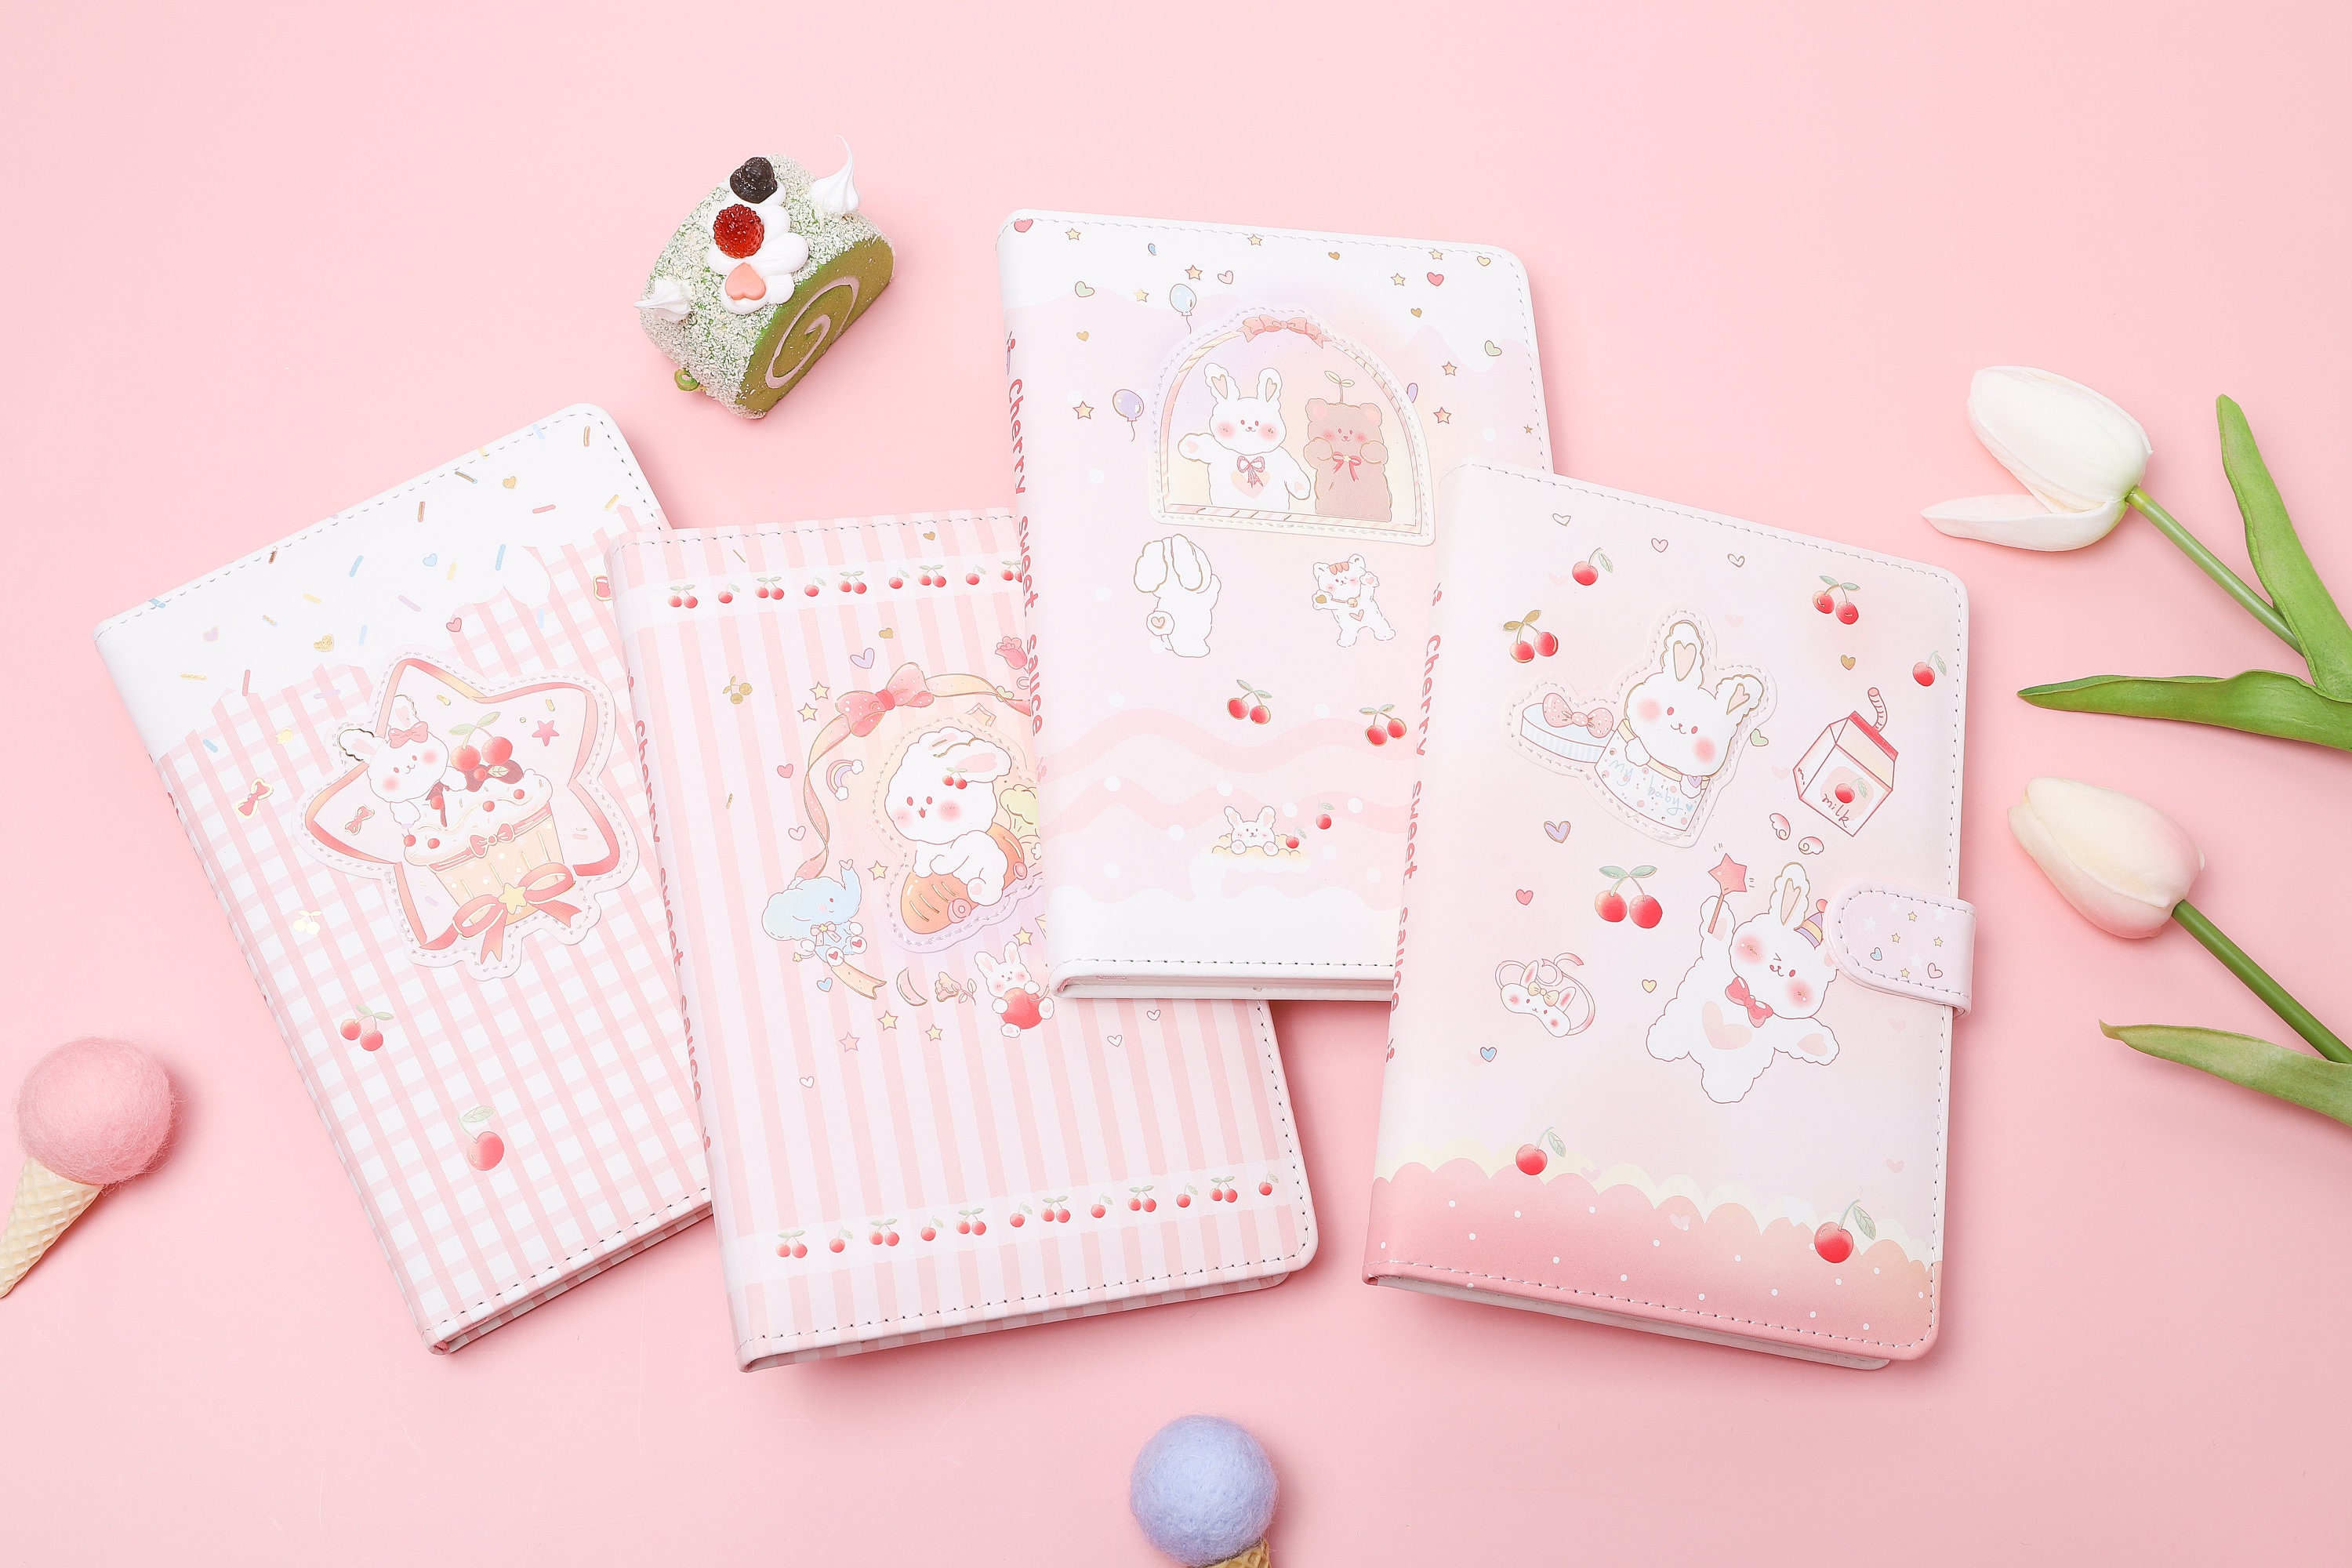 1pcs, Kawaii Notebook. Soft Touch, Cartoon, Gold Foiled Cover, Baby Bird  Boba Tea, Strawberry Rabbit Journal. 